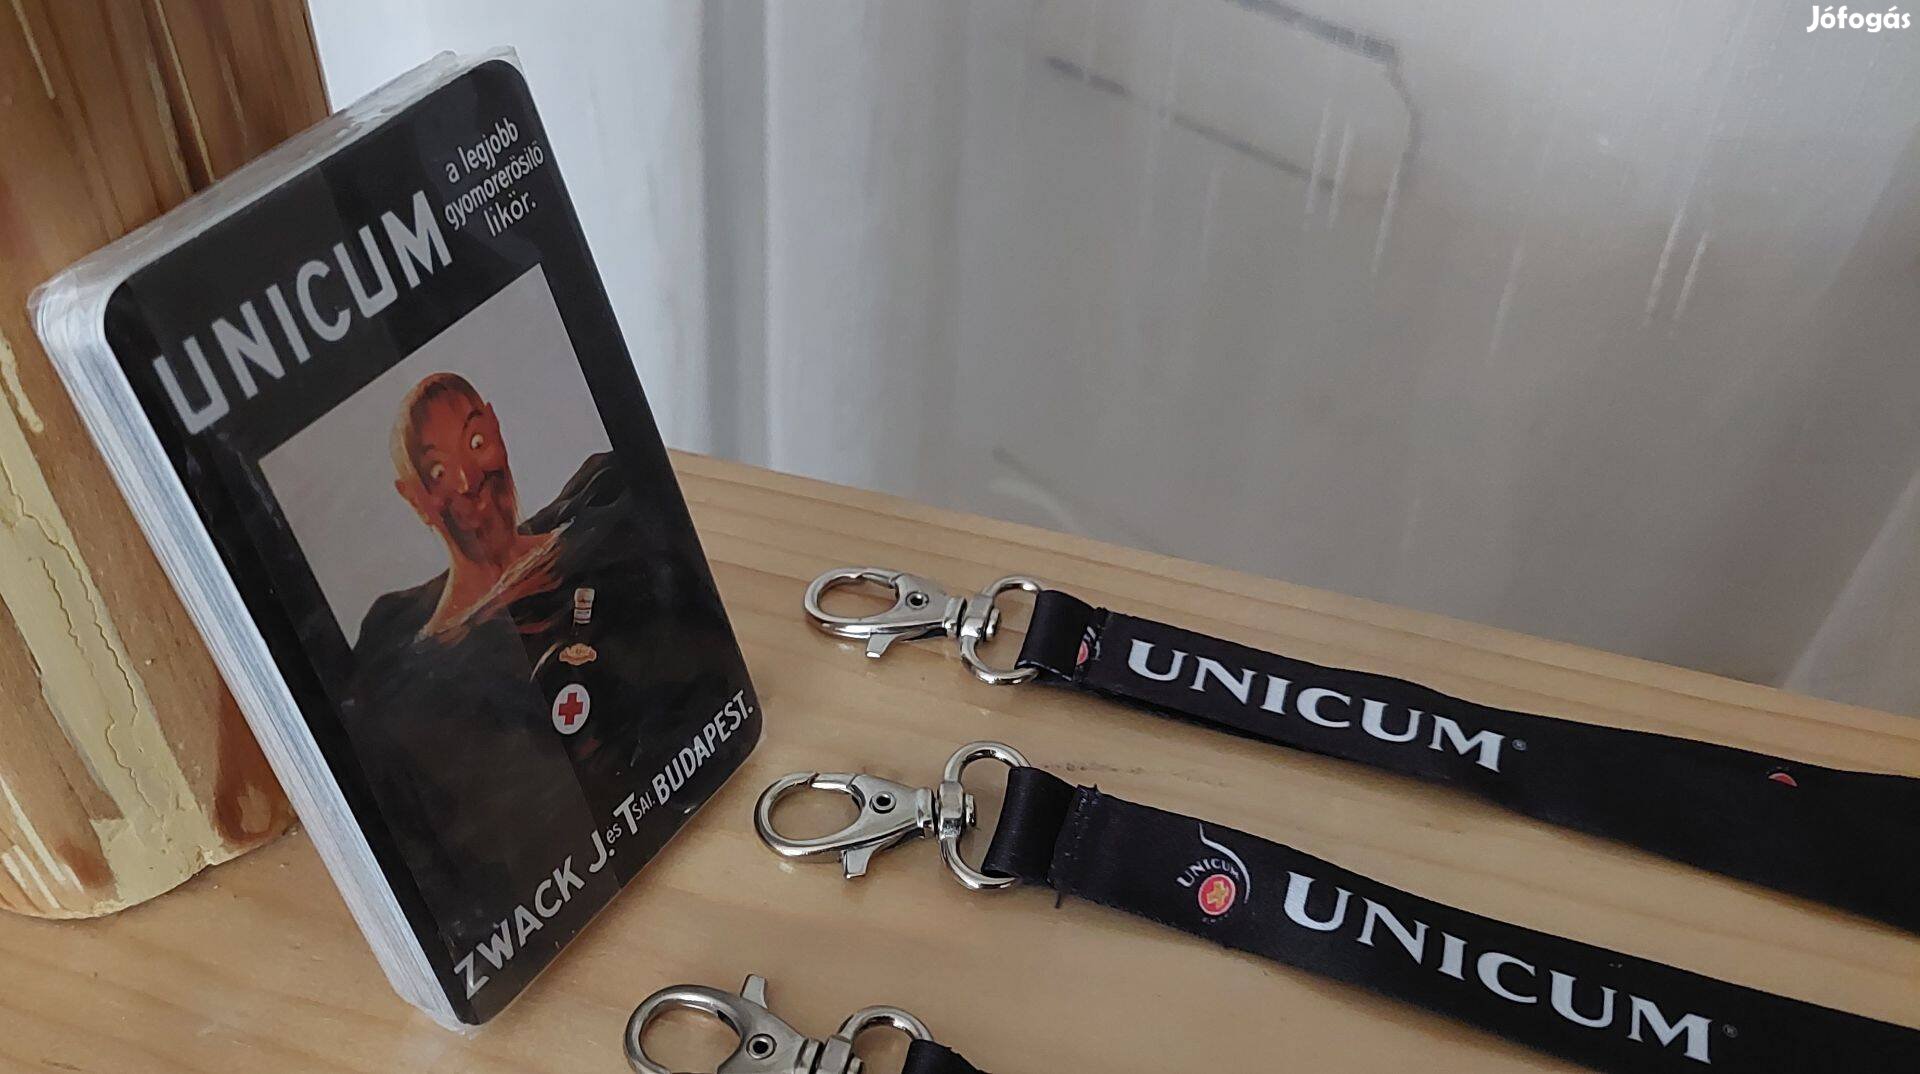 Unicum Unikum kártya normál kártya méret